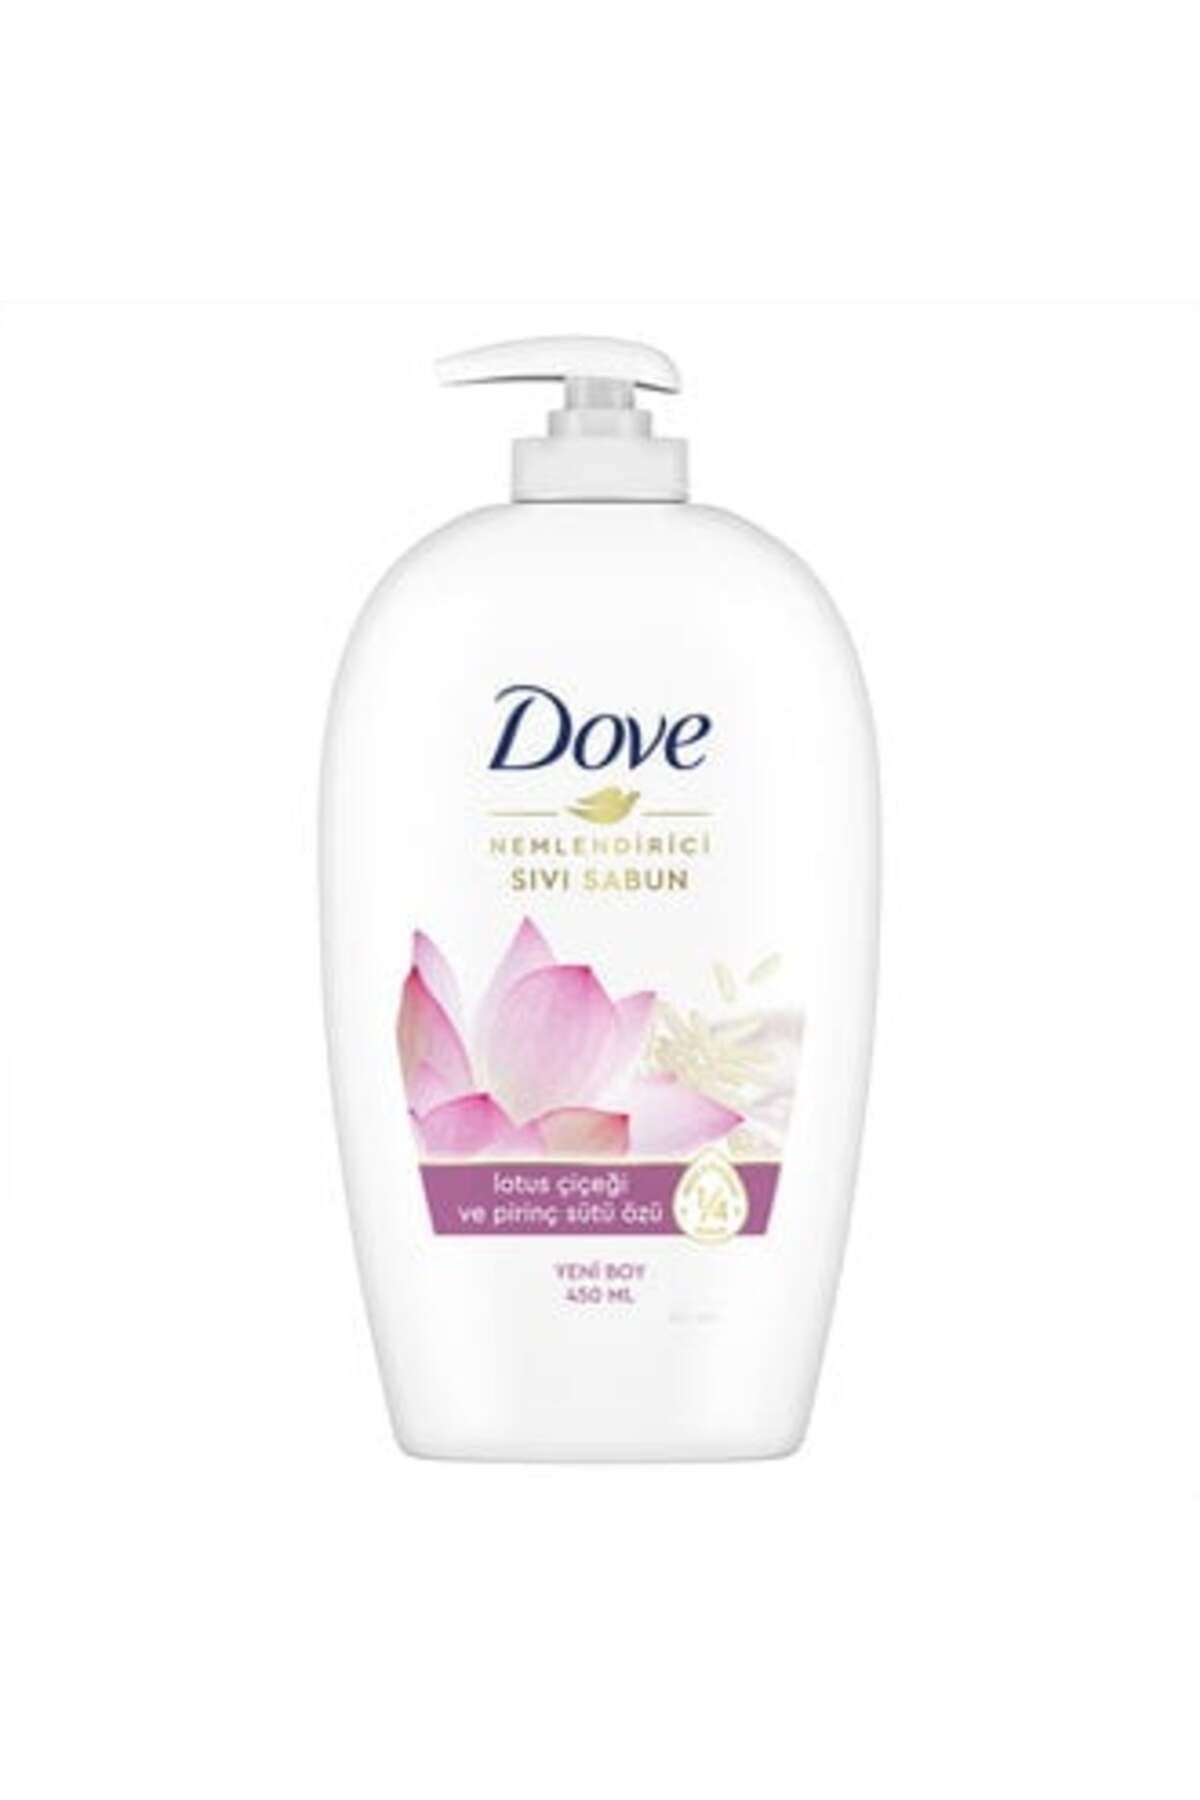 Dove Nemlendirici Sıvı Sabun Lotus Çiçeği Ve Pirinç Sütü Özü 450 Ml ( 1 ADET )